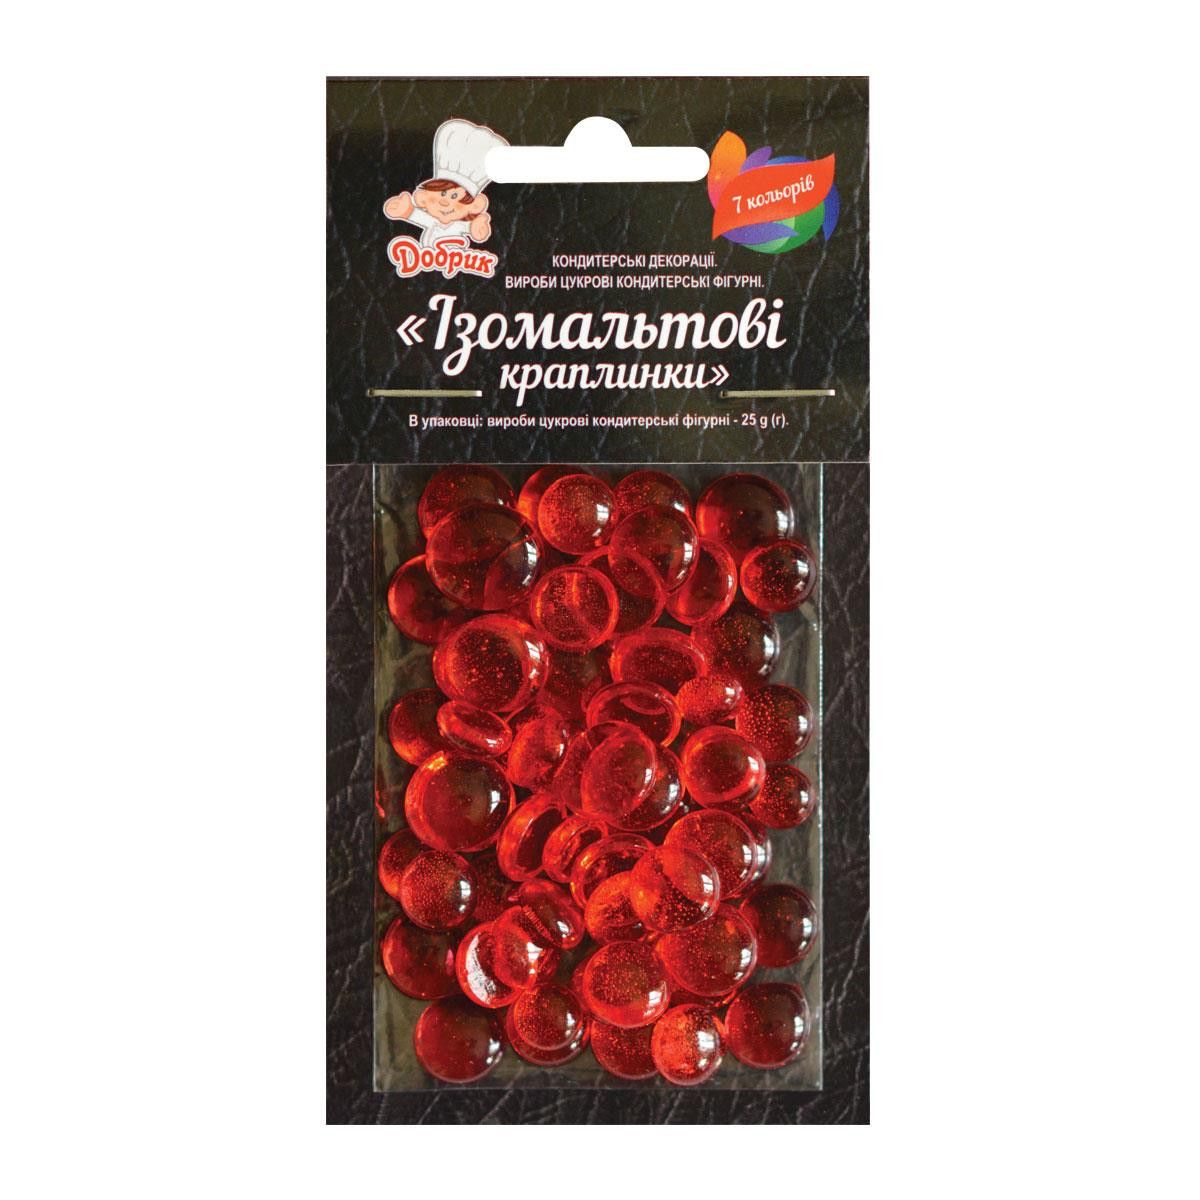 ⋗ Изомальтовые капли красные купить в Украине ➛ CakeShop.com.ua, фото